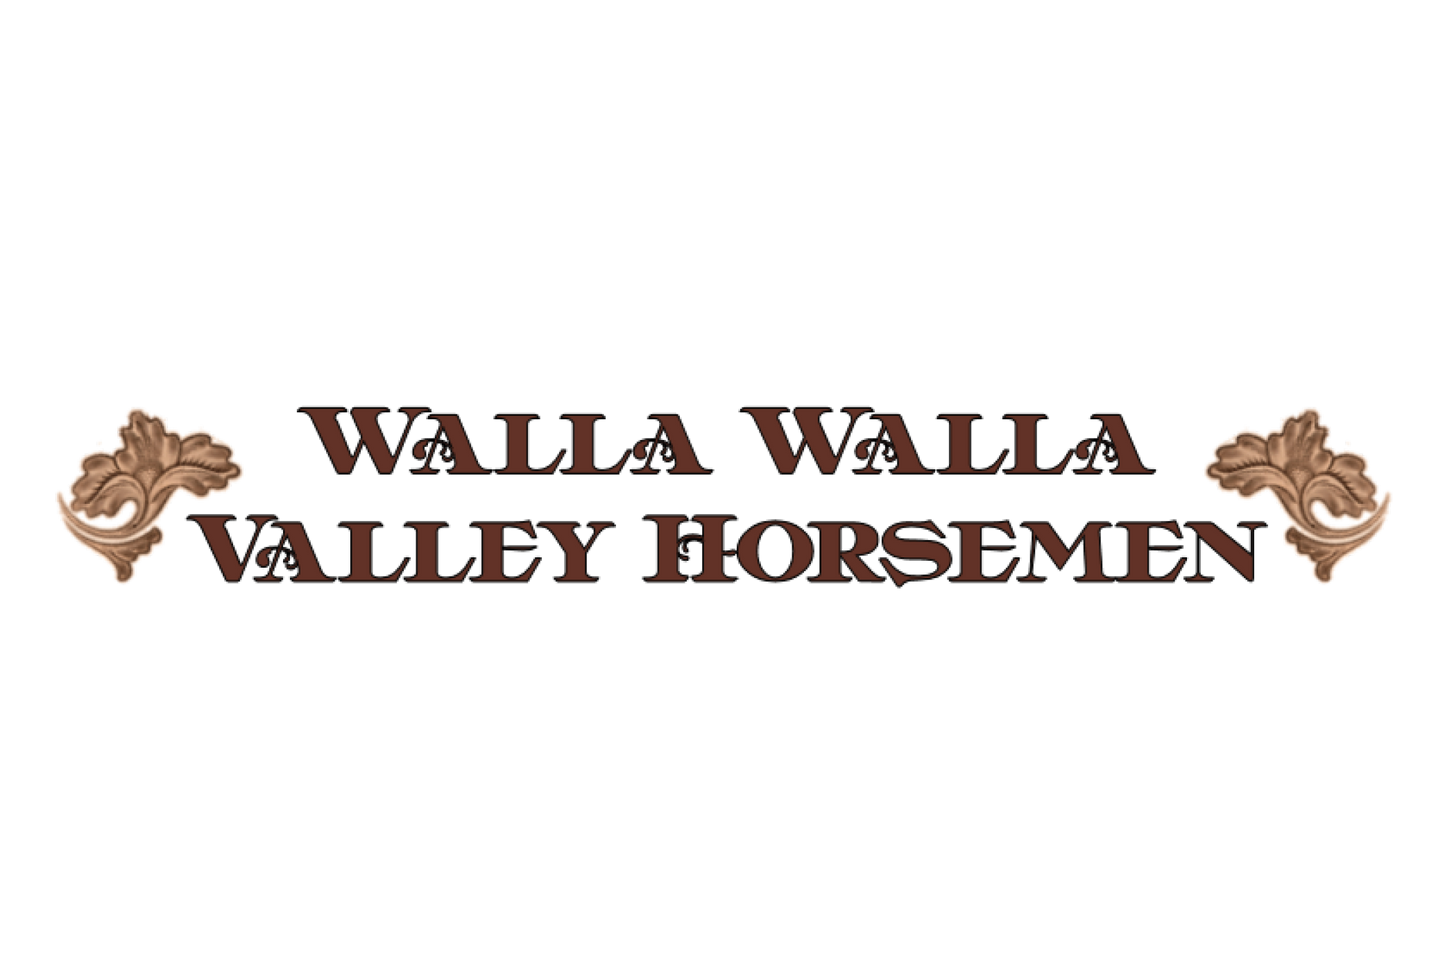 Walla Walla Valley Horsemen